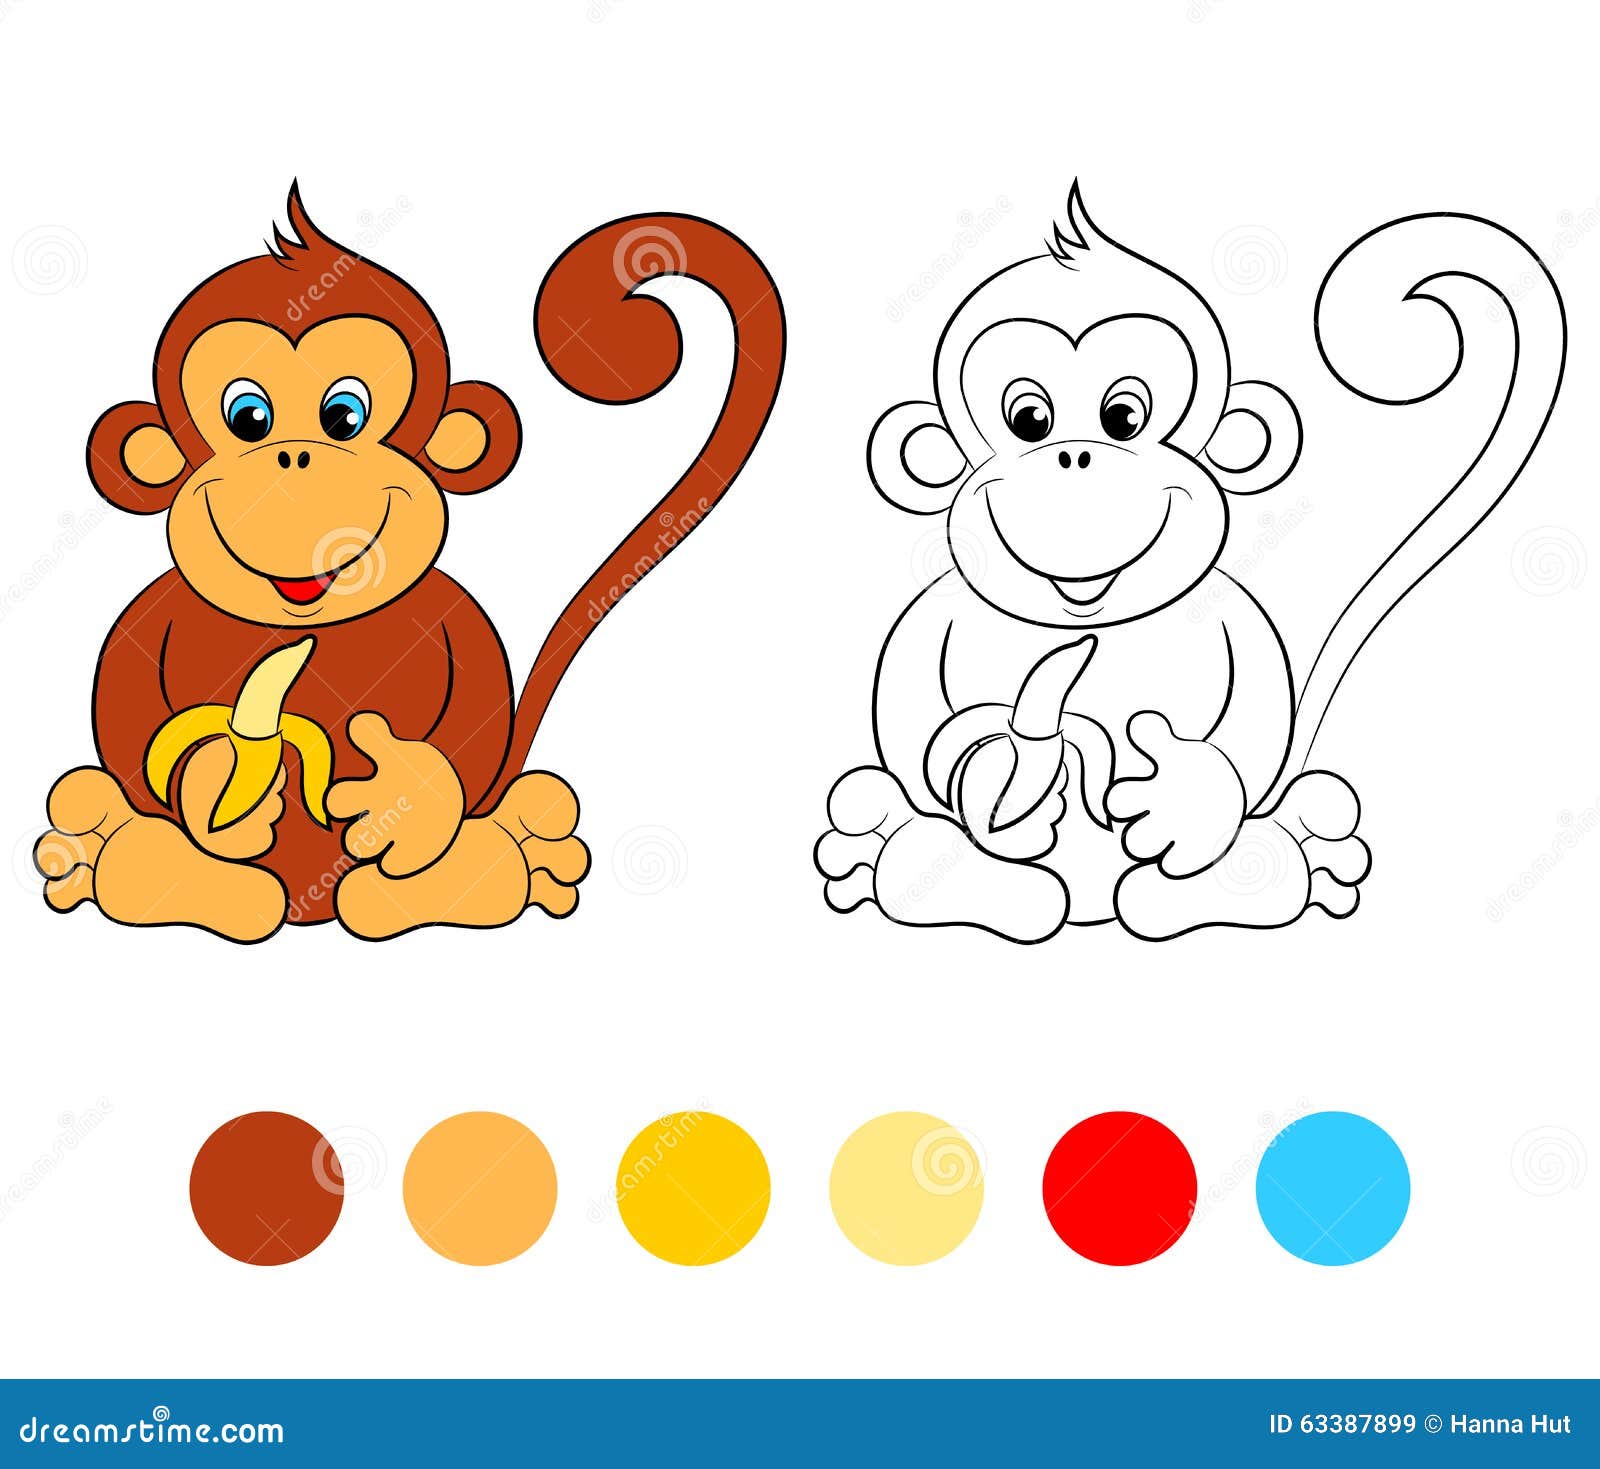 Crianças Colorindo Livros Ou Colorindo Páginas Ilustração Macaco Ilustração  do Vetor - Ilustração de atividades, tampa: 261662335